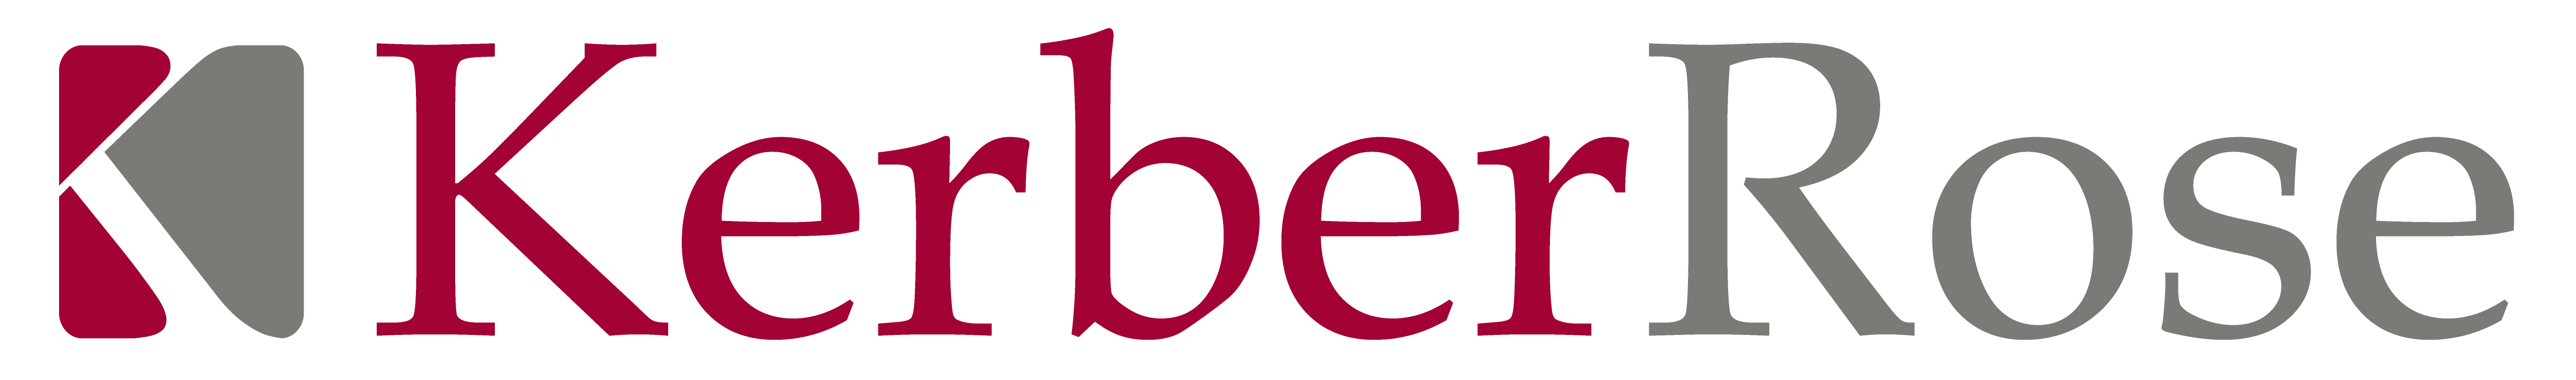 KERBERROSE_CC_LOGO-website-home-page-logo